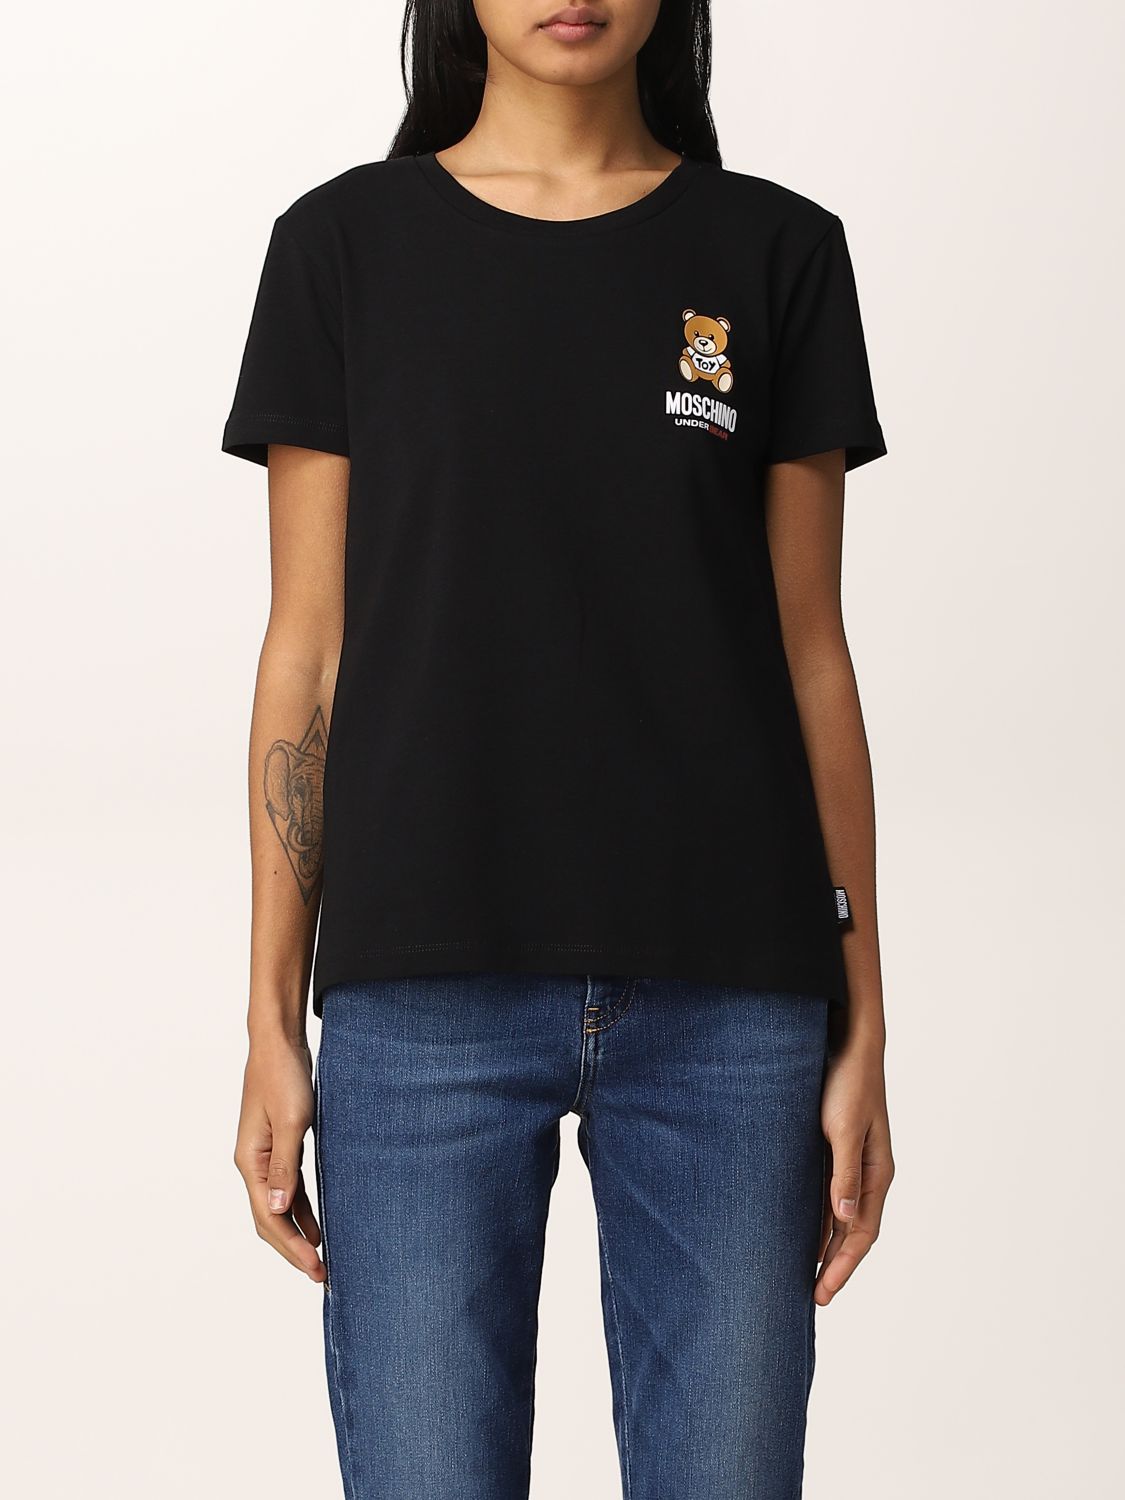 MOSCHINO UNDERWEAR: t-shirt for women - Black | Moschino Underwear t ...